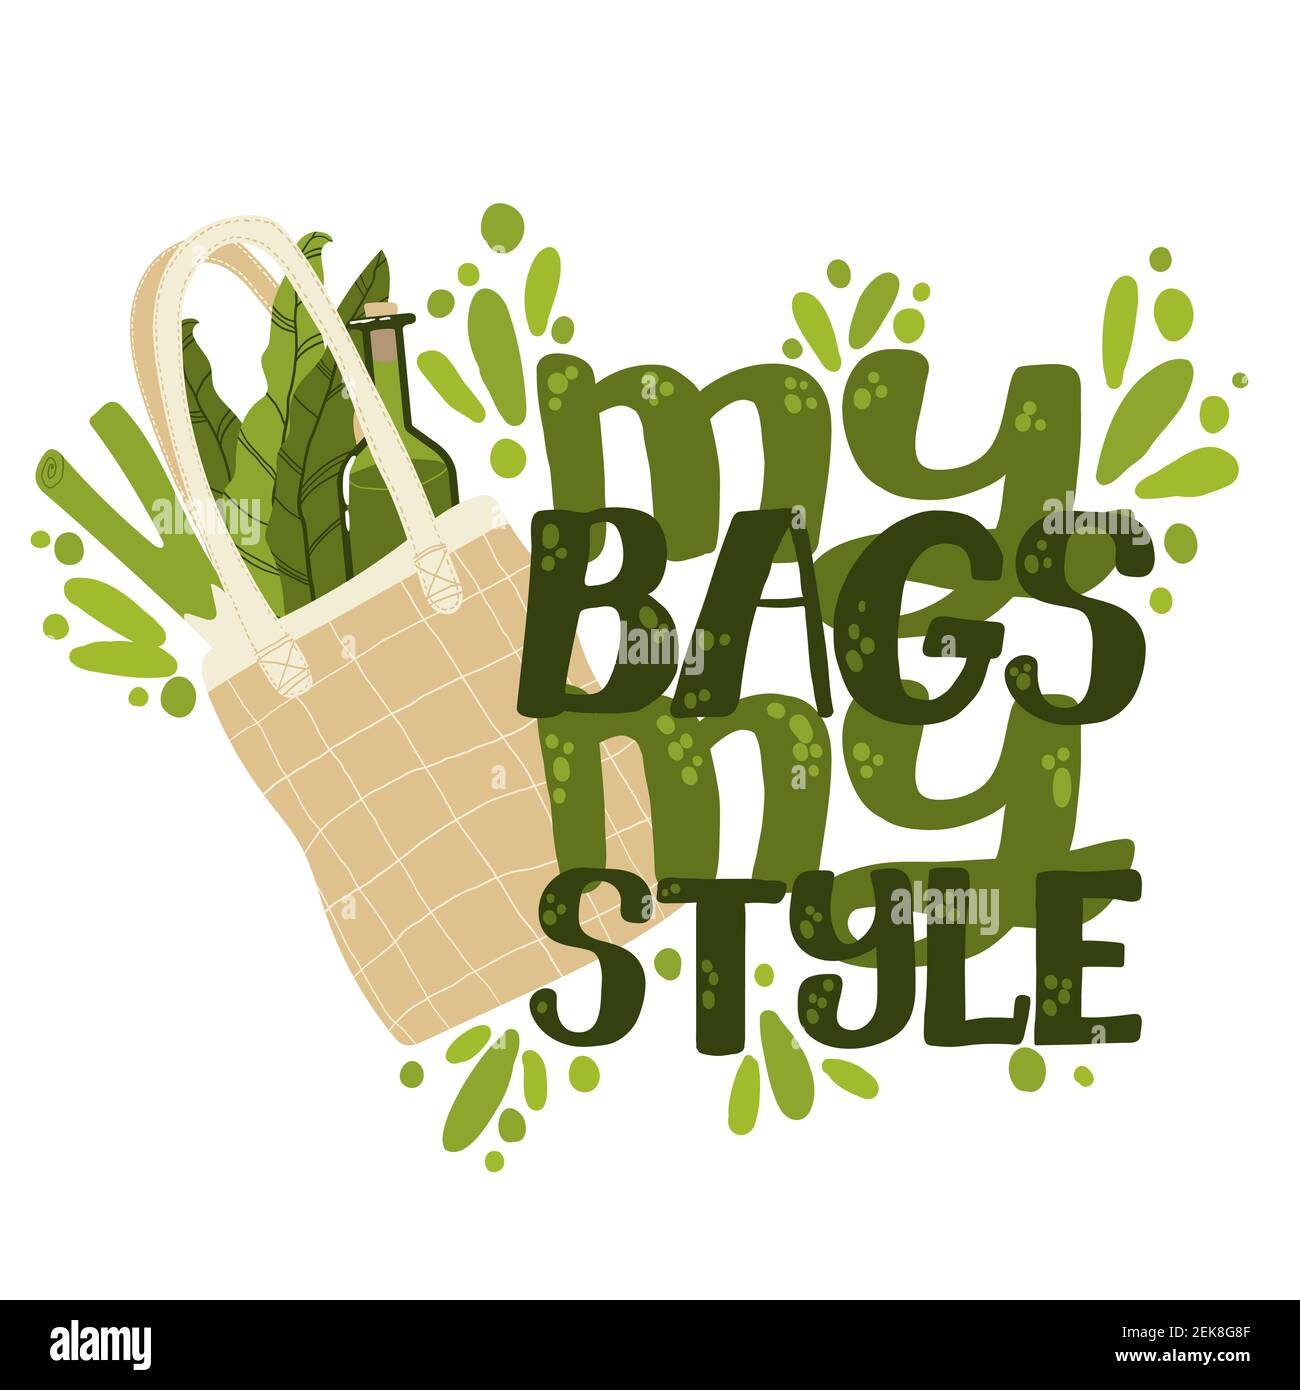 newspaper bags, We have here a slogan: Plastic Free Nilgiri…